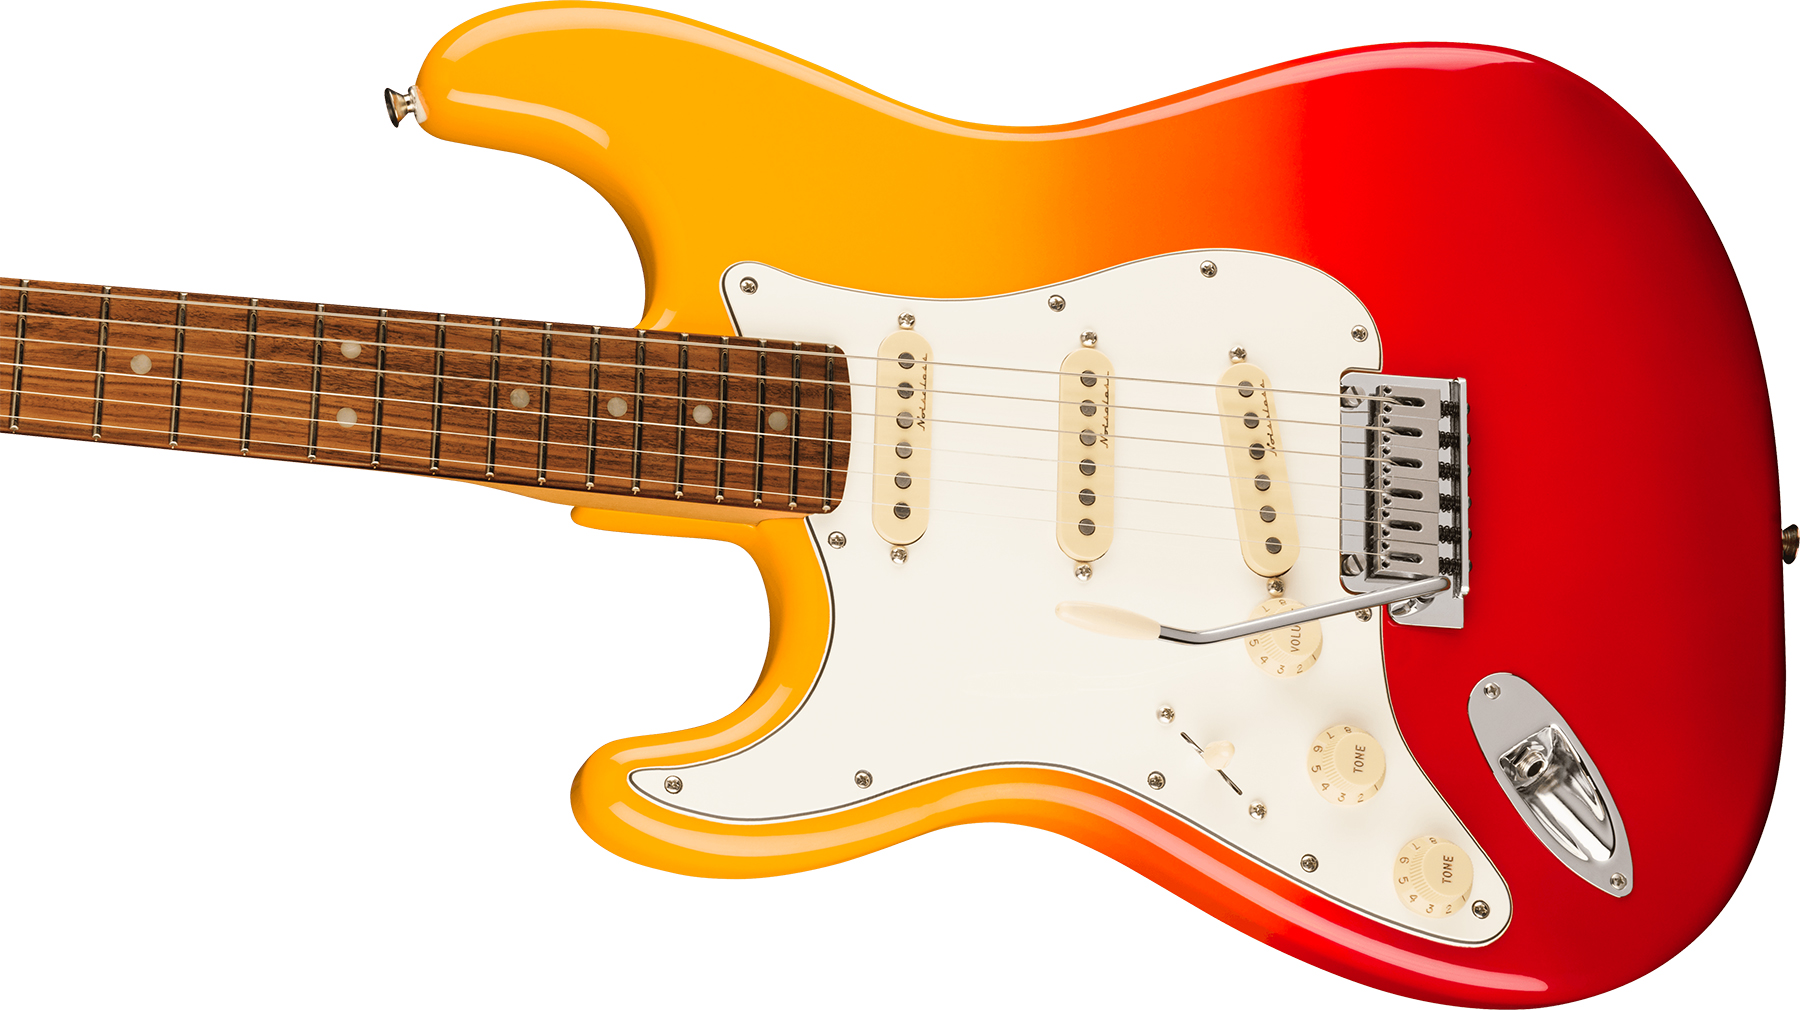 Fender Strat Player Plus Lh Gaucher Mex 3s Trem Pf - Tequila Sunrise - Linkshandige elektrische gitaar - Variation 2